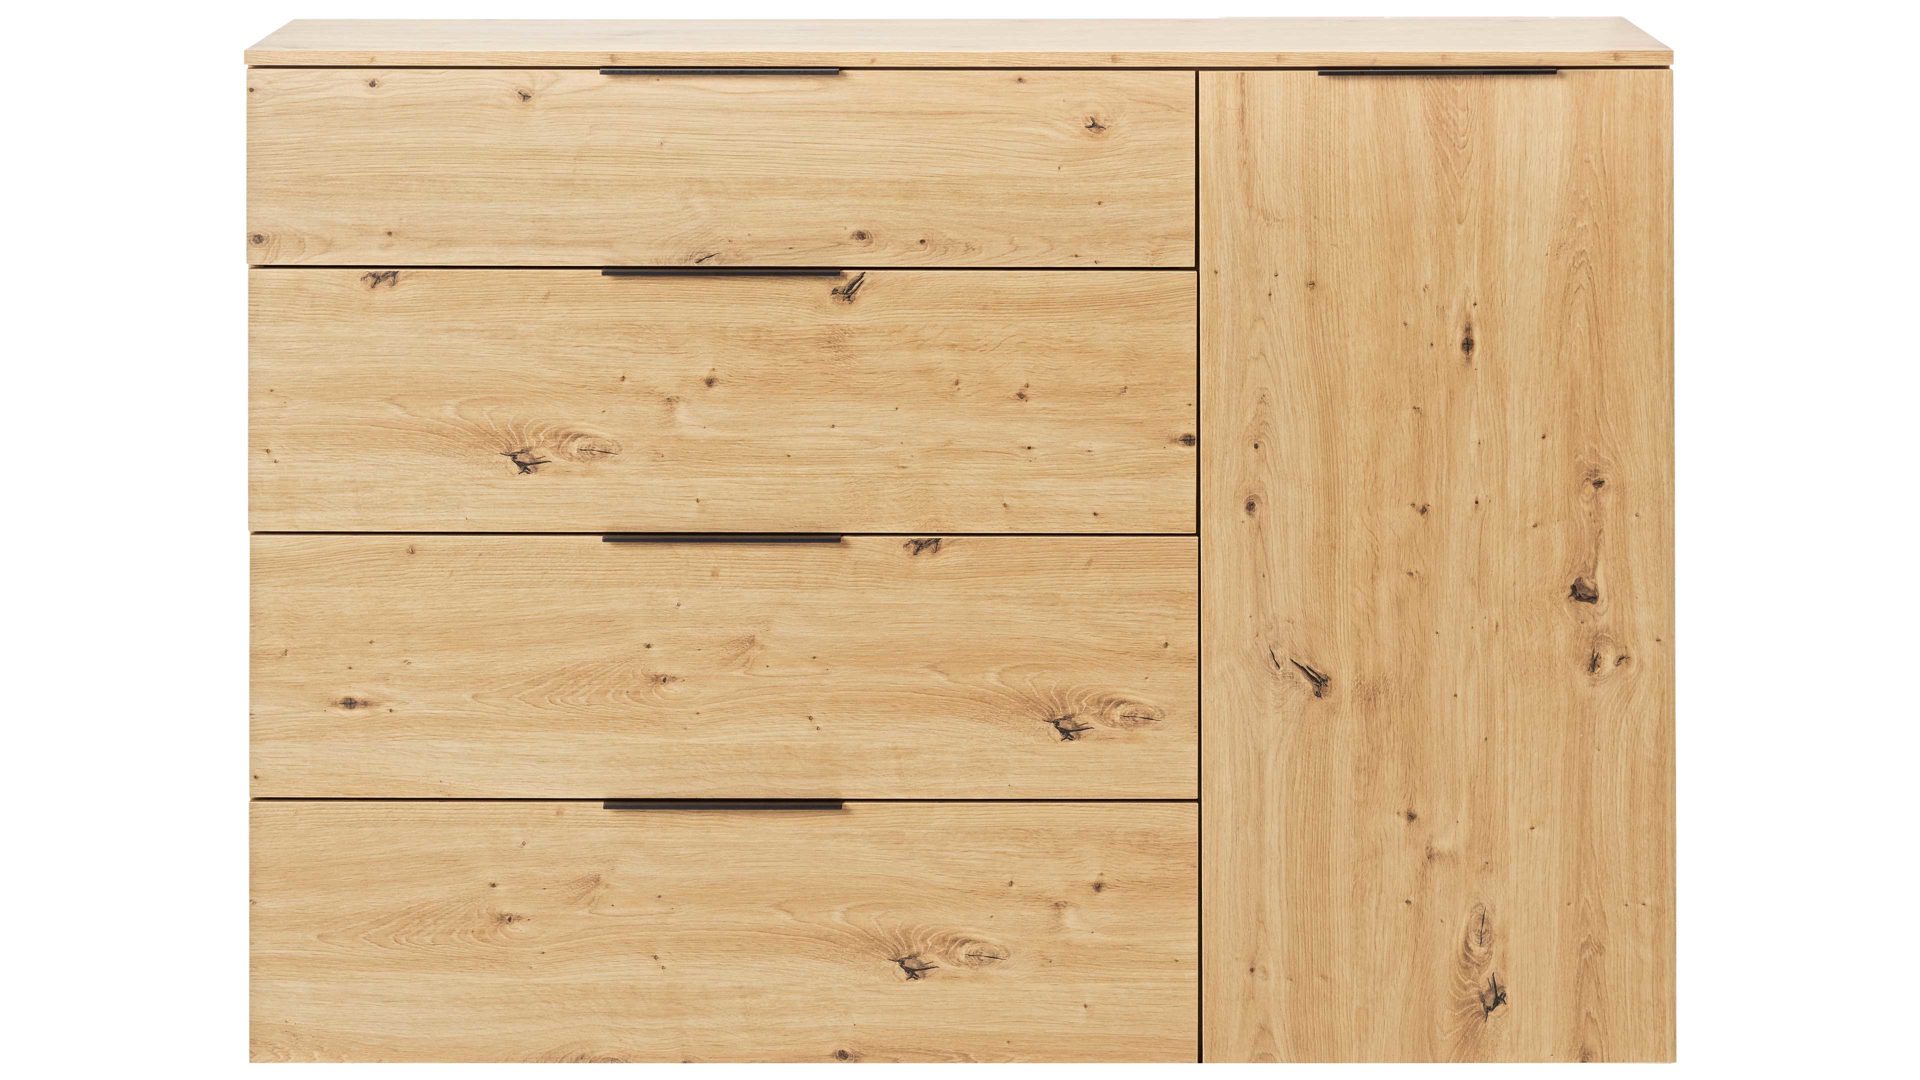 Sideboard Maja möbel aus Holz in Holzfarben MAJA MÖBEL Kommodenserie Trend Wood - Kombikommode Asteiche  - vier Schubladen & eine Tür, Breite ca. 135 cm